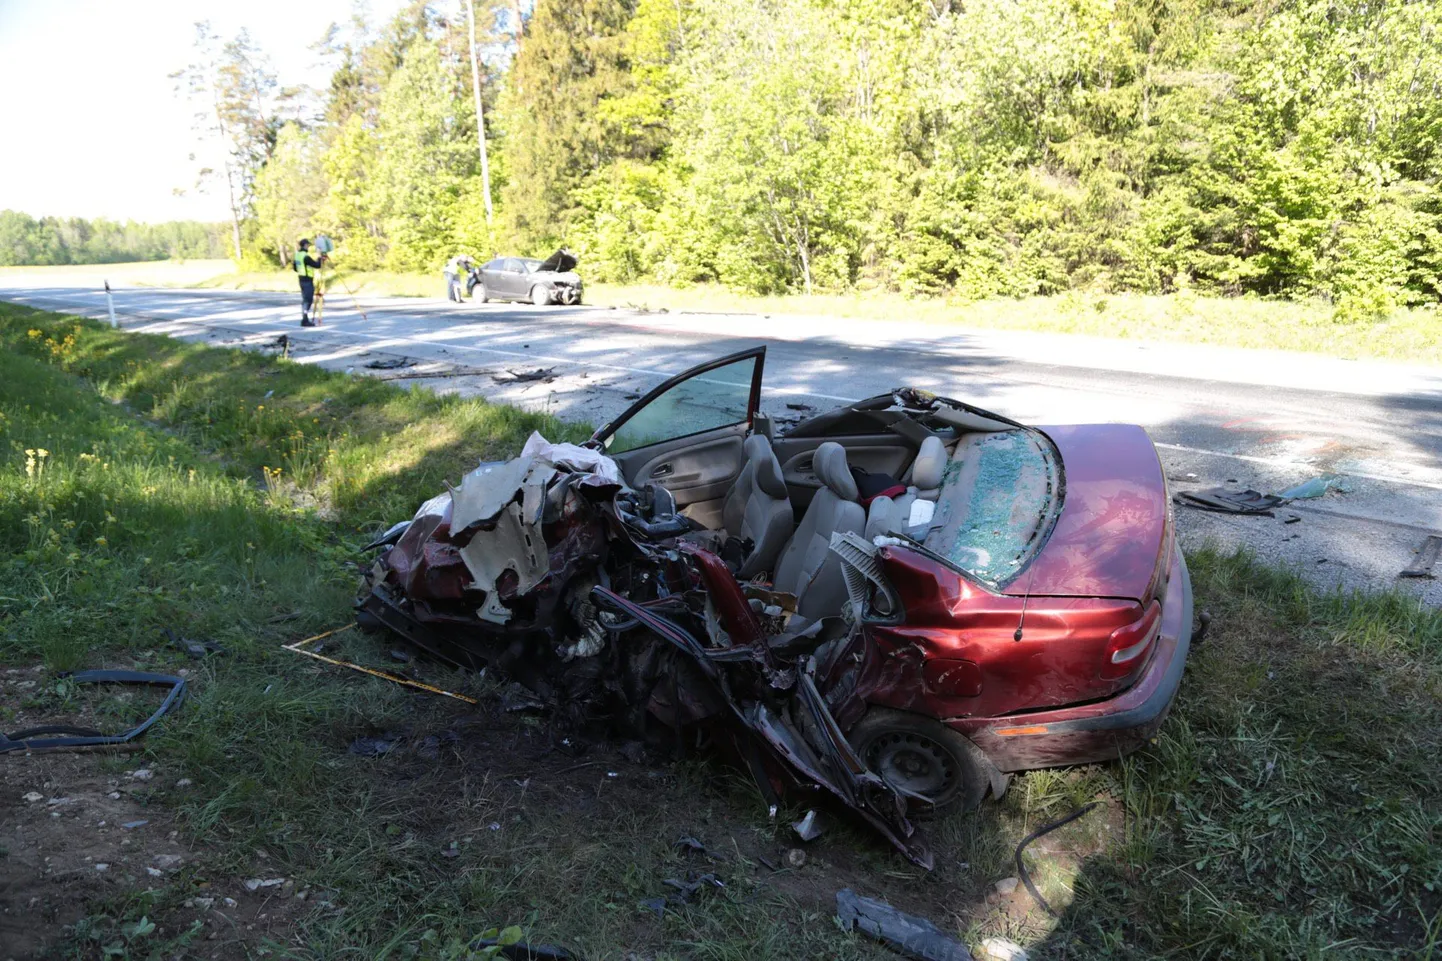 Vahetult enne jaanipäeva hukkus Ääsmäe-Haapsalu maanteel juhtunud rängas liiklusõnnetuses inimene.